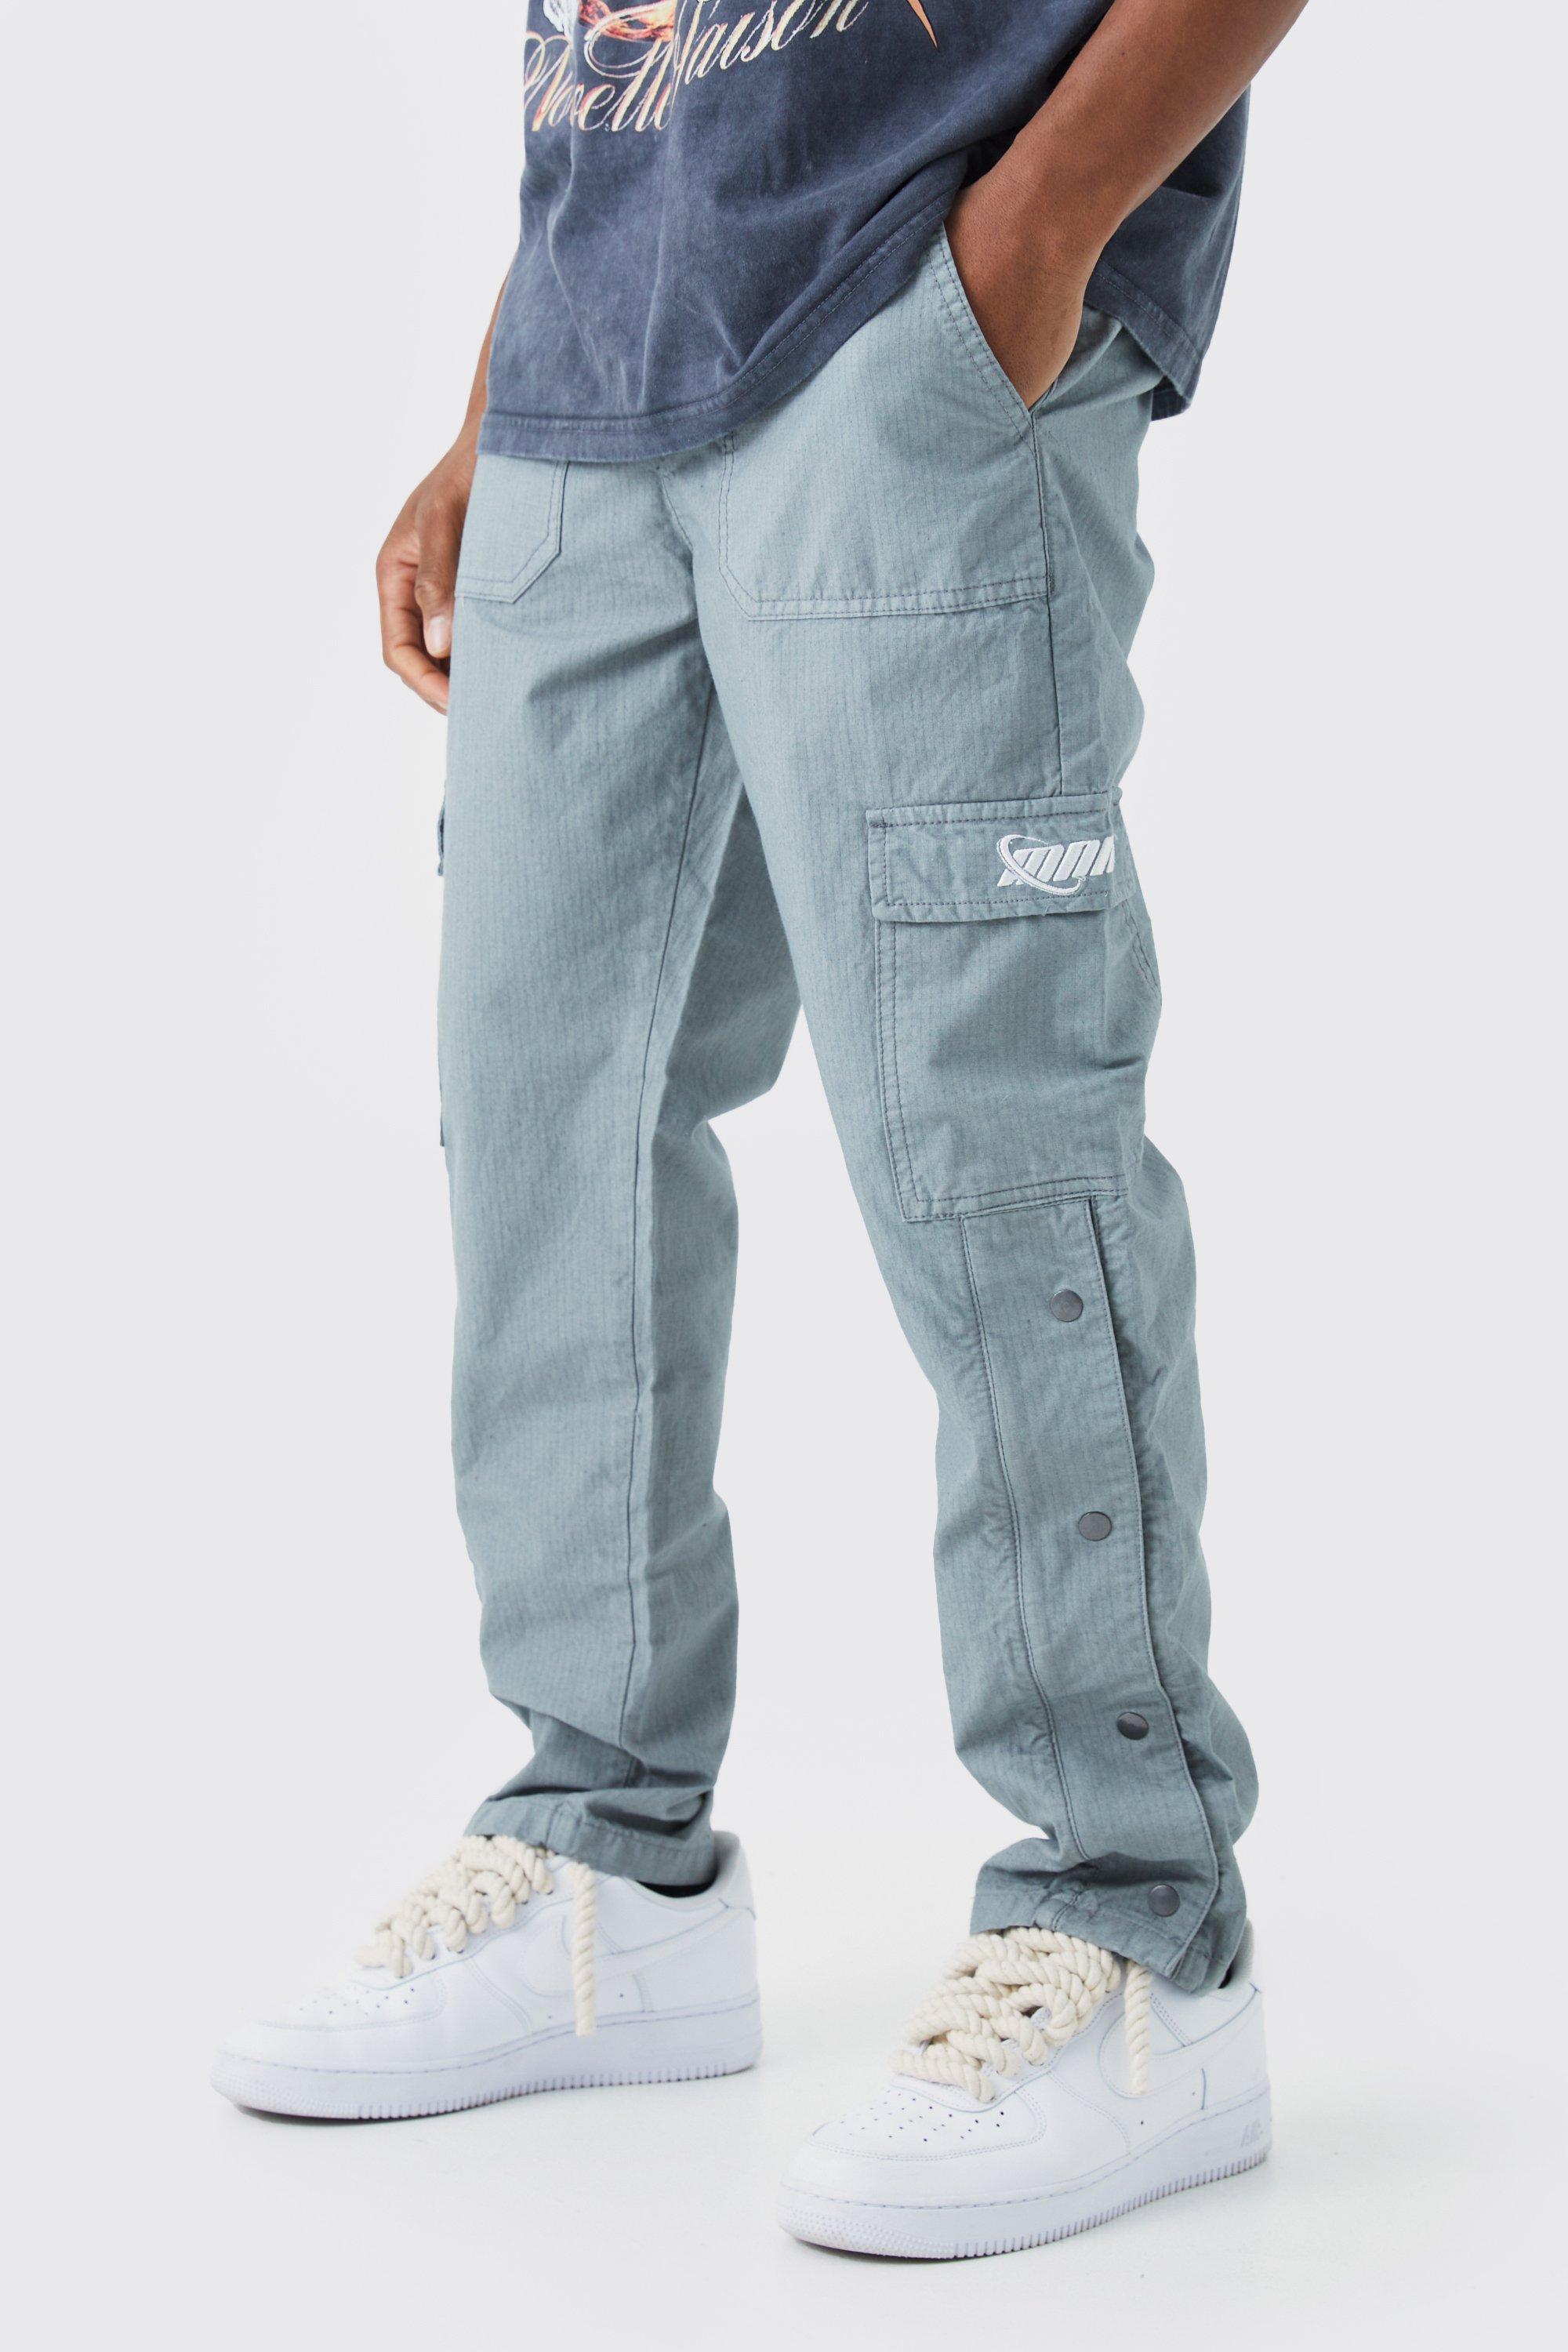 pantalon cargo droit à boutons pression homme - gris - 36, gris